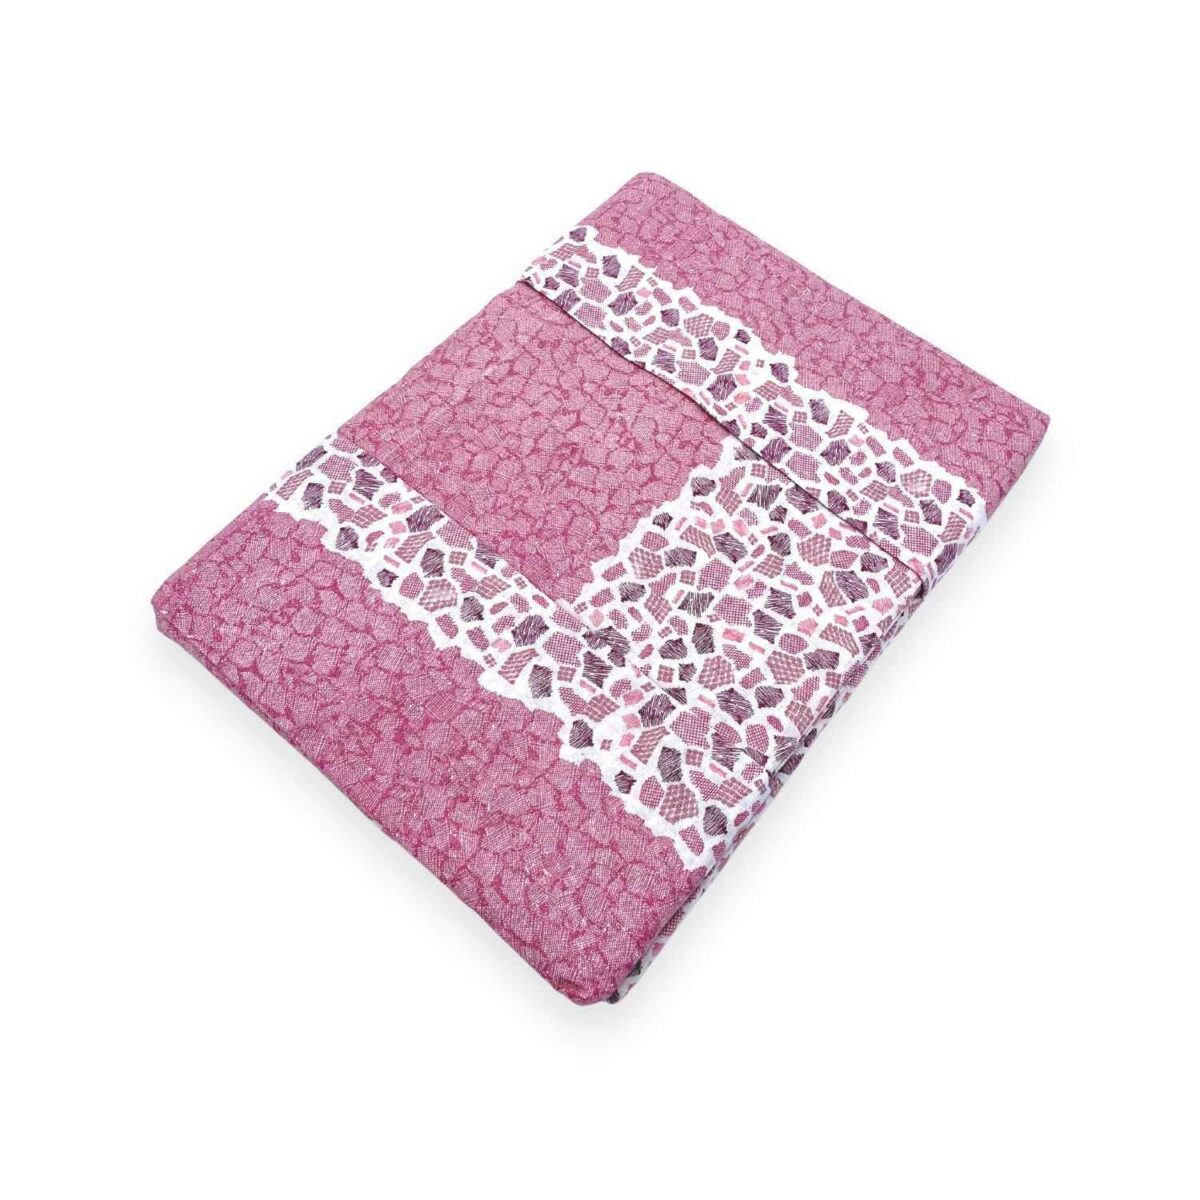 nashville-rosa-pauline-completo-lenzuola-cotone-geometrico-pietre-sfumato-bianco-cipria-porpora-fold